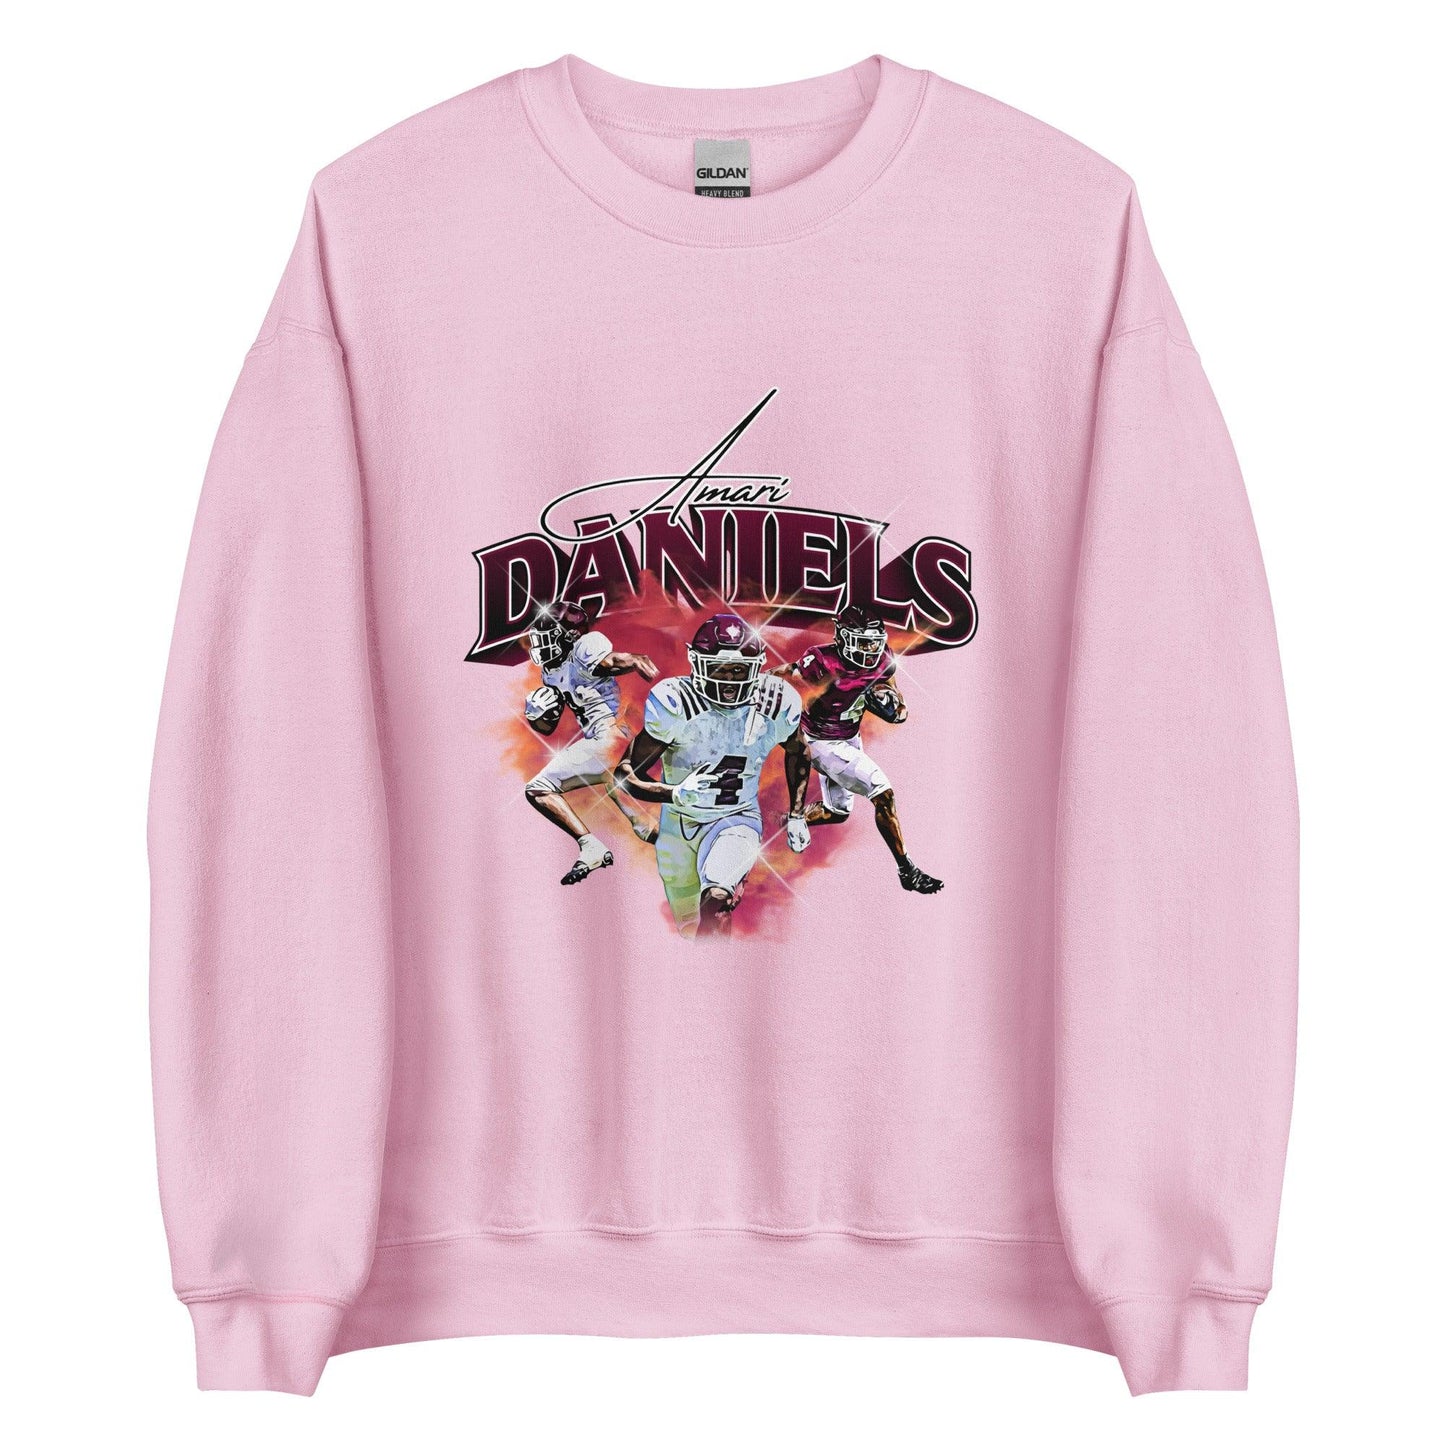 Amari Daniels "Legacy" Sweatshirt - Fan Arch